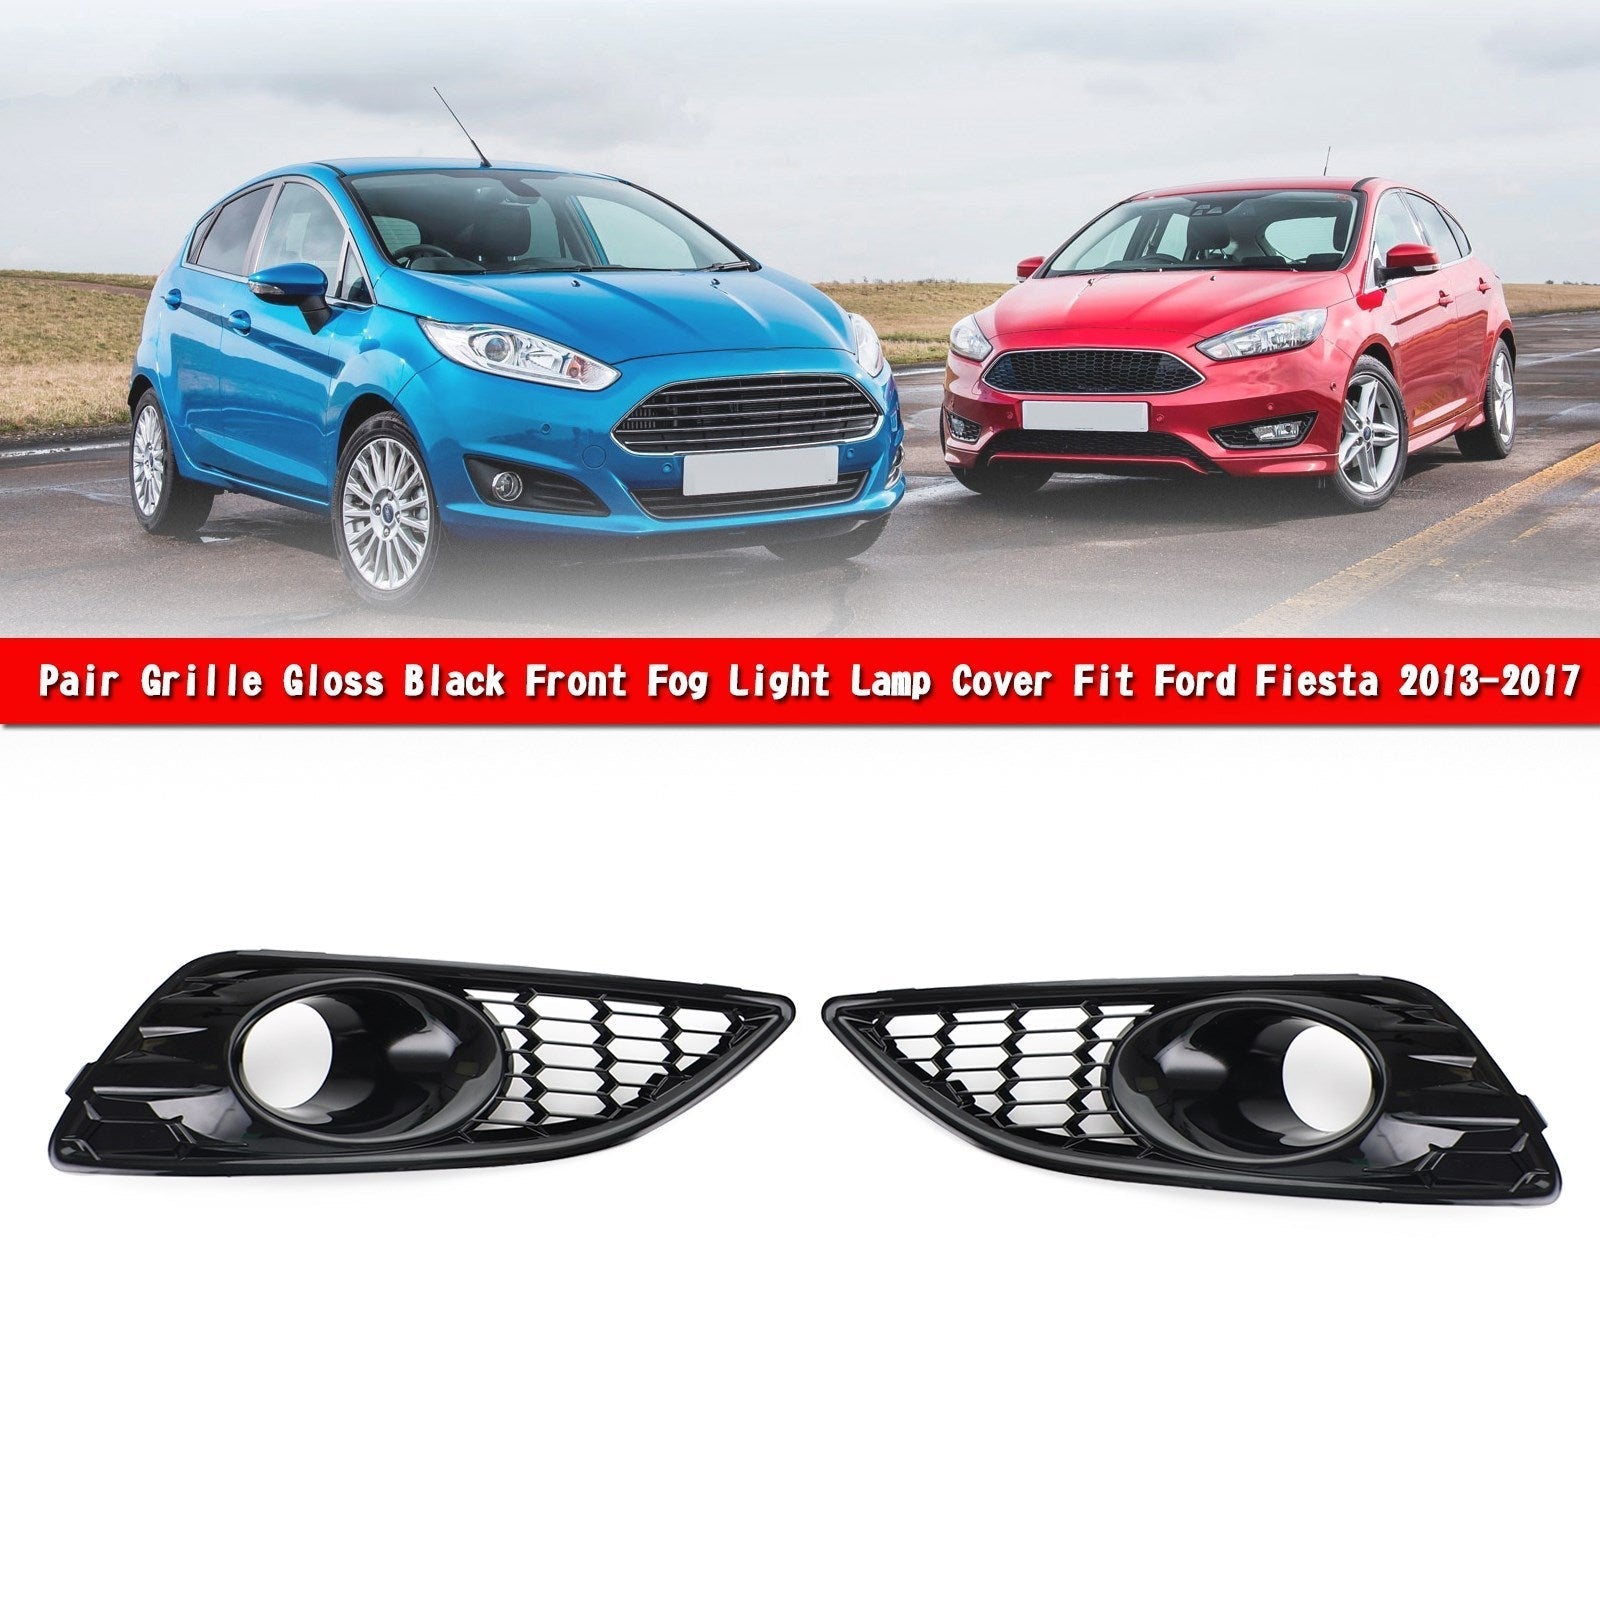 Paire de calandre noir brillant avant antibrouillard couvercle de lampe pour Ford Fiesta 2013-2017 générique